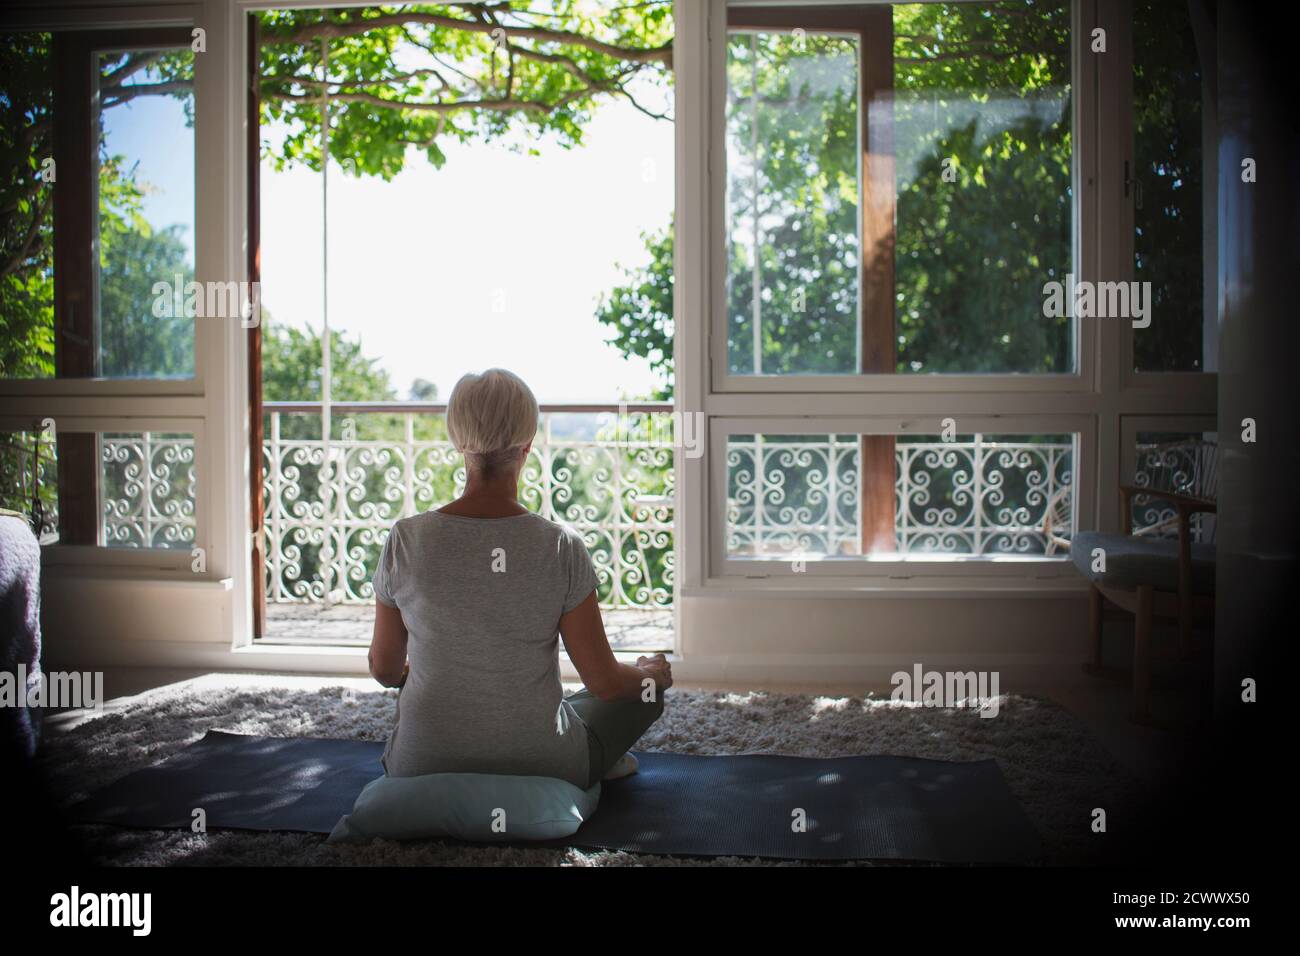 Serene woman meditating at tranquil sunny balcony window Stock Photo